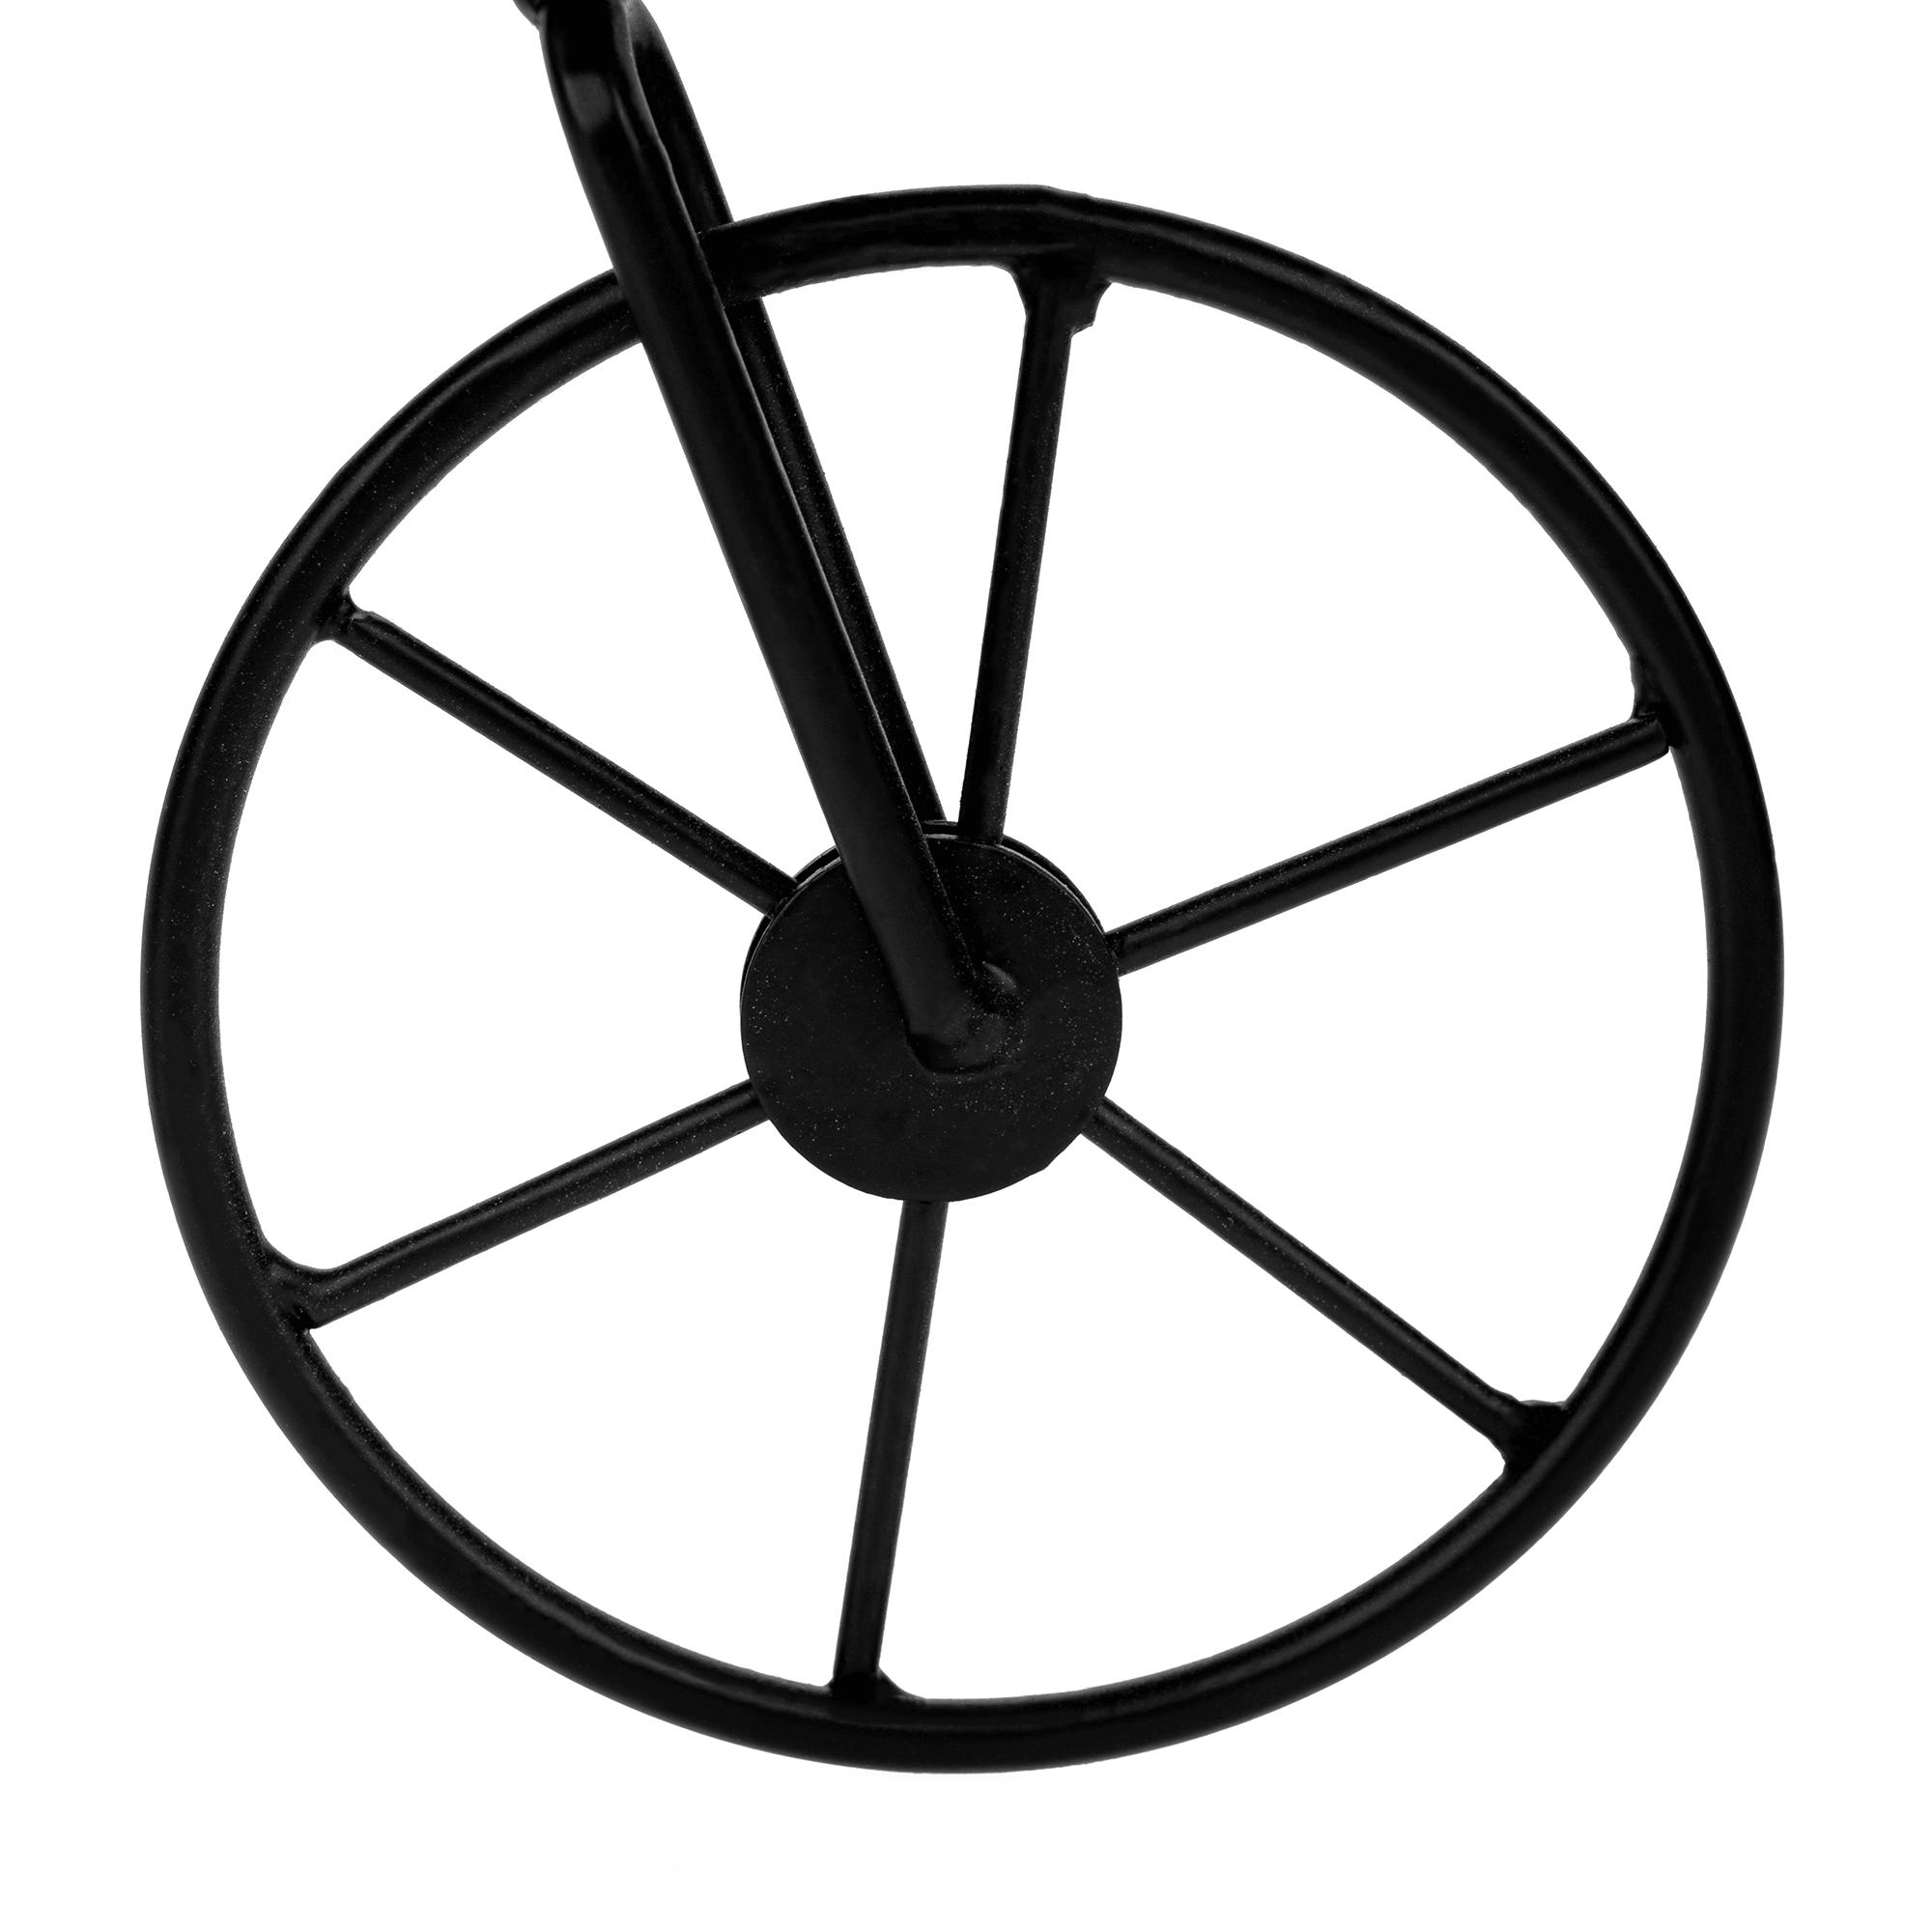 Ghiveci RETRO în formă de bicicletă, vişiniu / negru, SEMIL